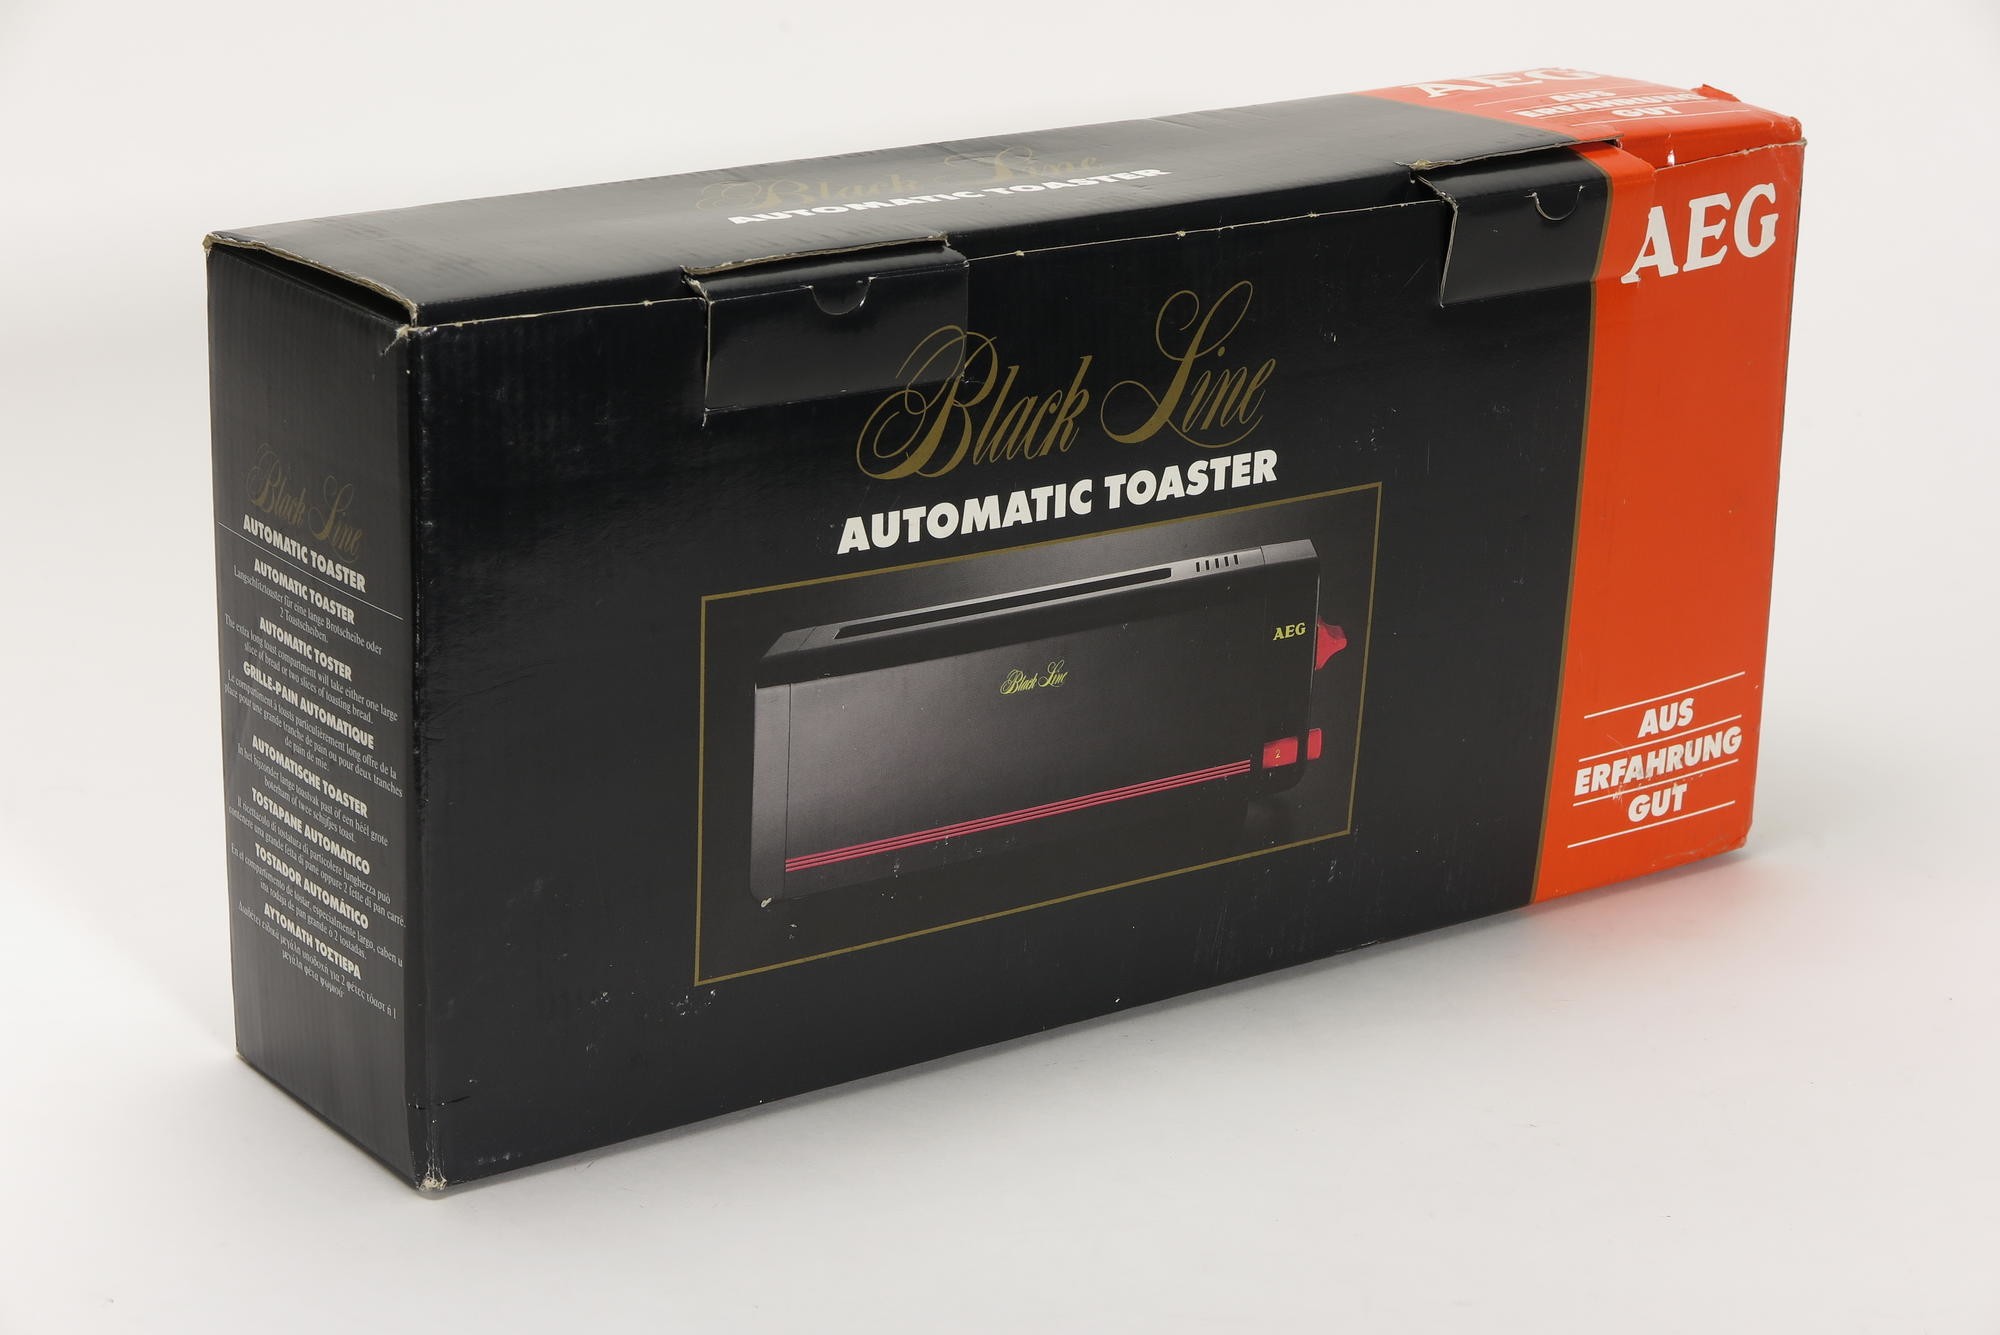 Verpackungskarton, Zubehör zu Automatischer Toaster AEG Typ E WK 0026 Modell AT 210L `Black Line automatic toaster´ (Stiftung Deutsches Technikmuseum Berlin CC0)